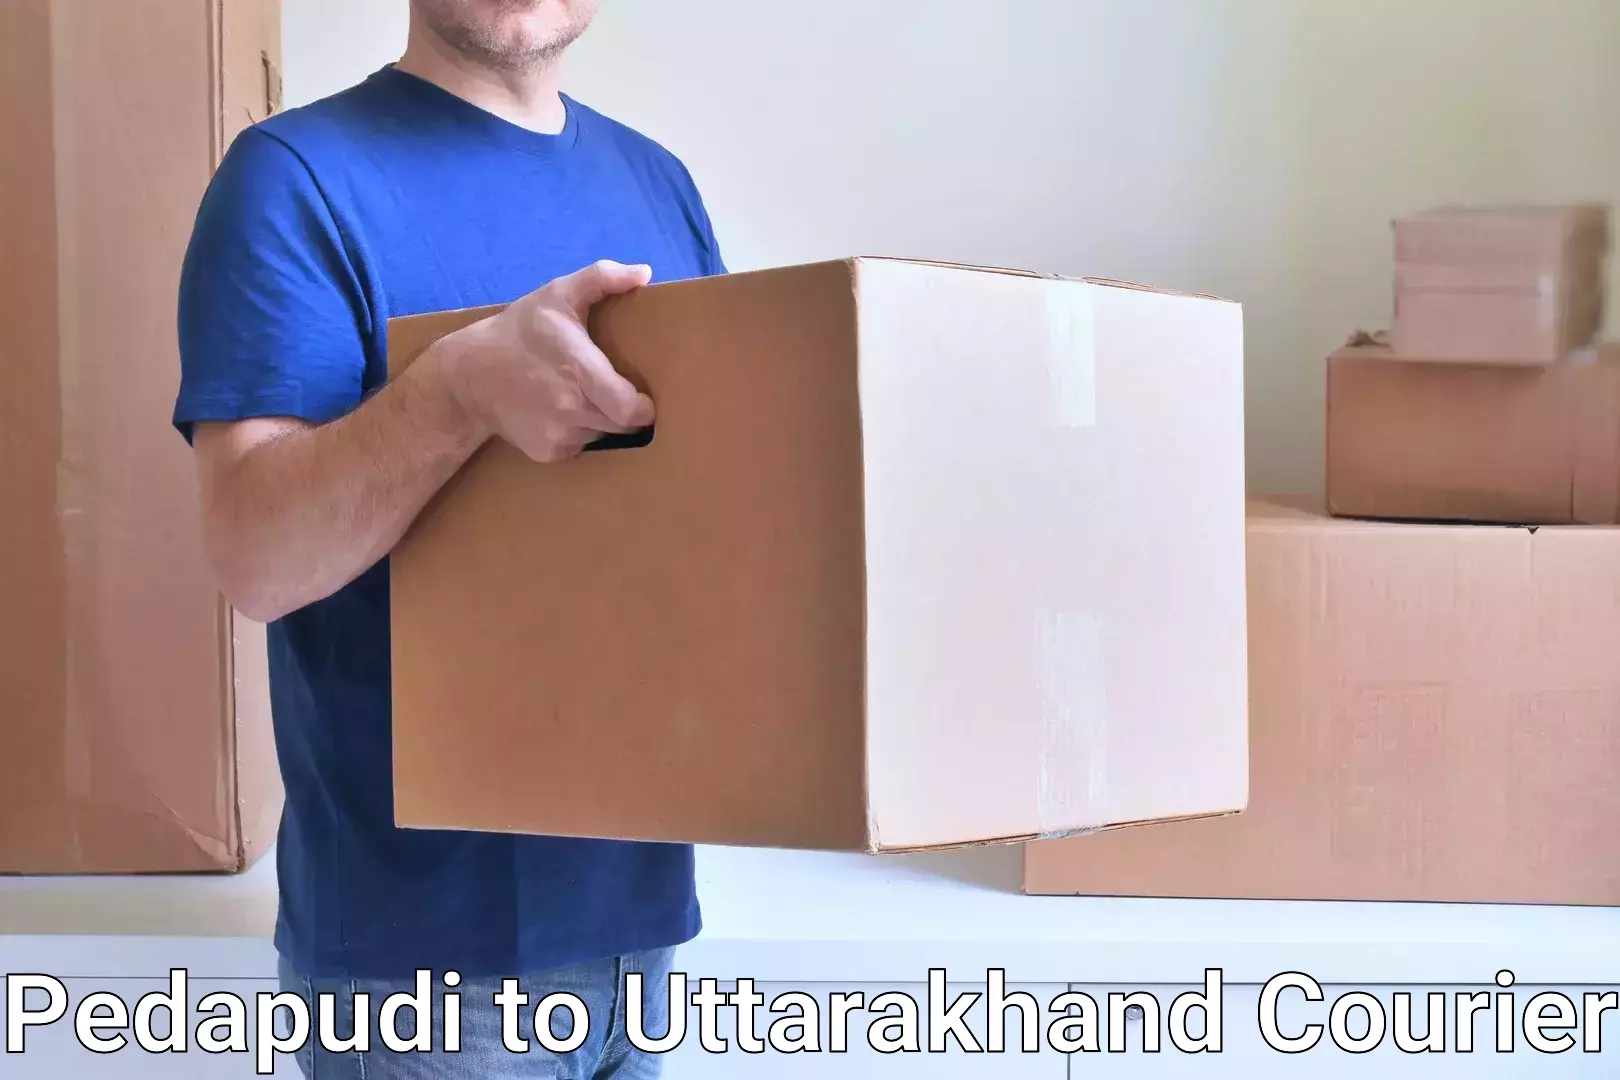 Quality courier partnerships Pedapudi to Uttarkashi